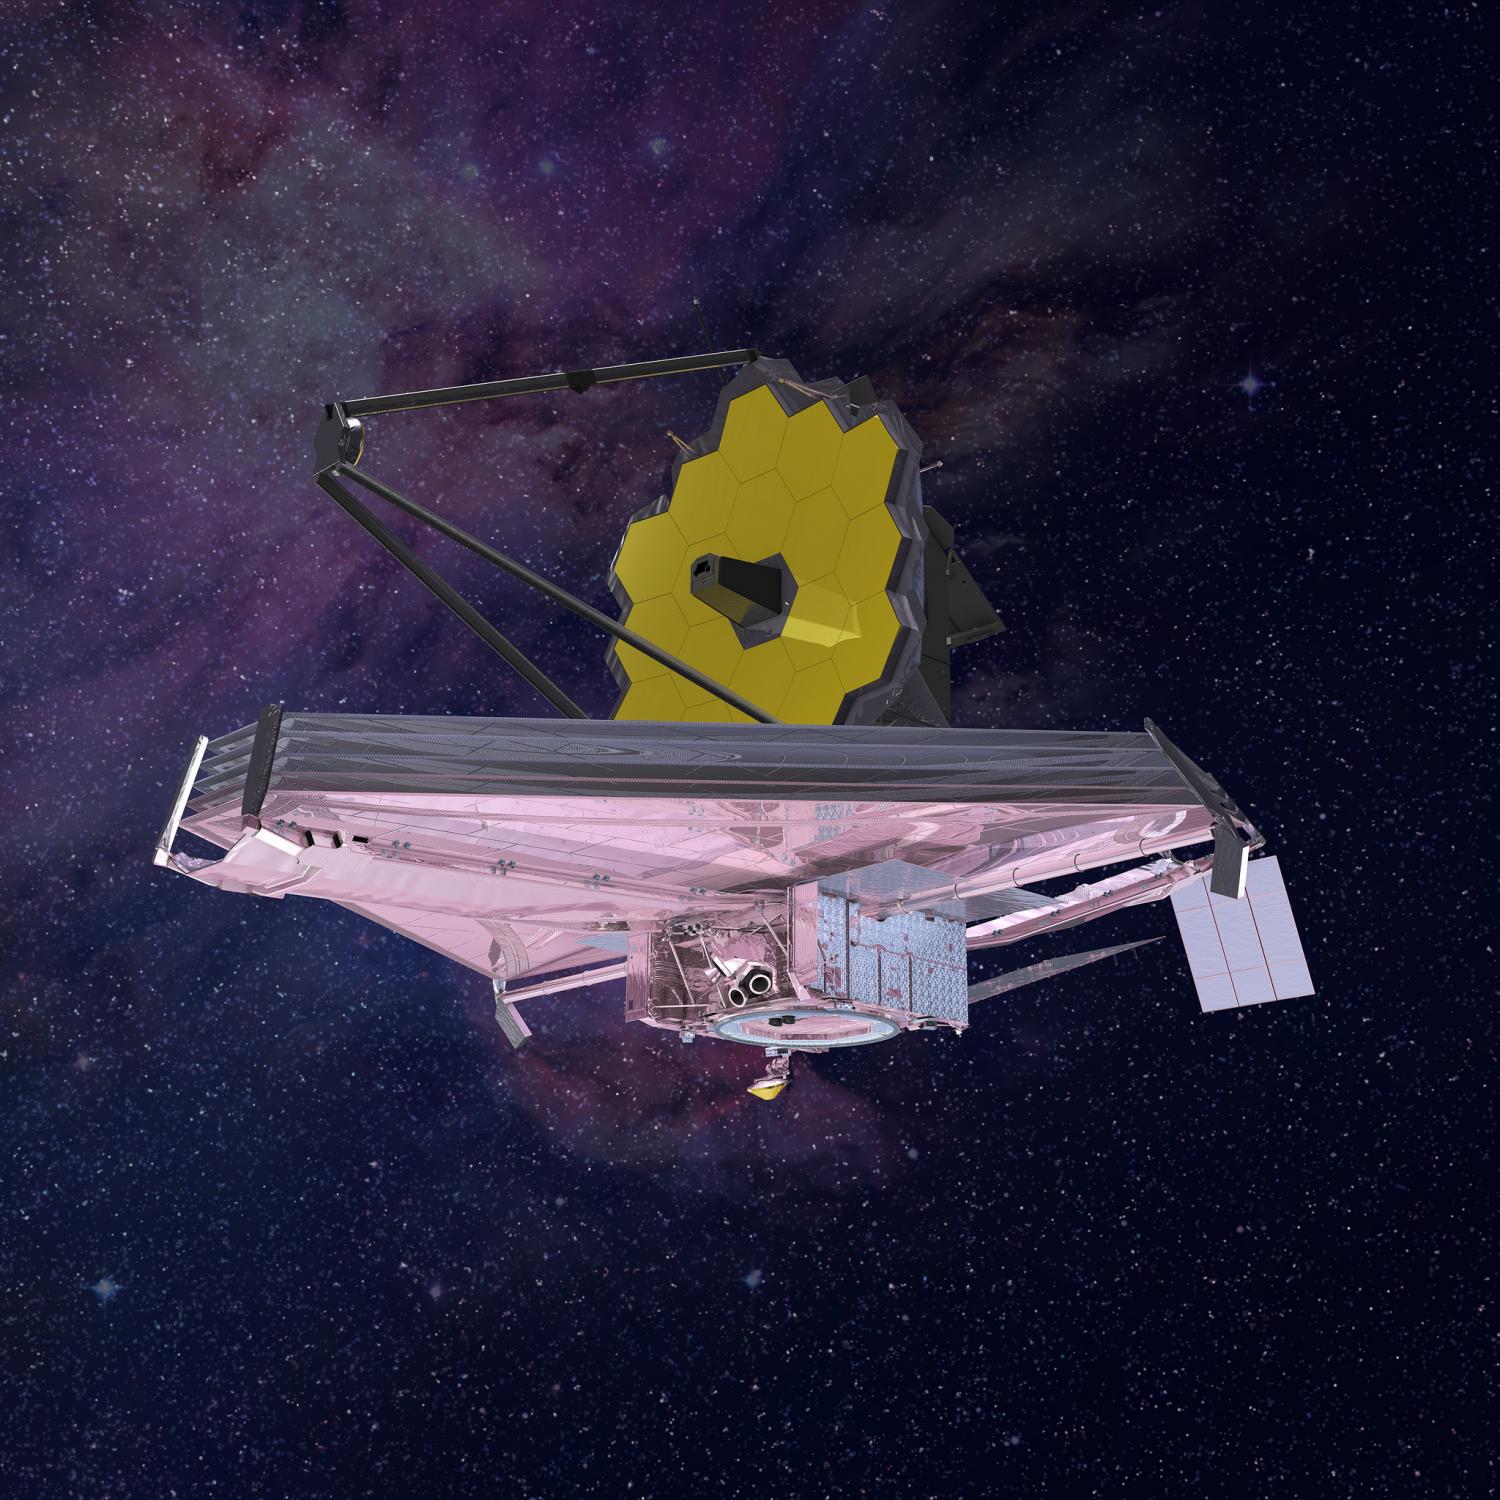 Webb Telescope in orbit